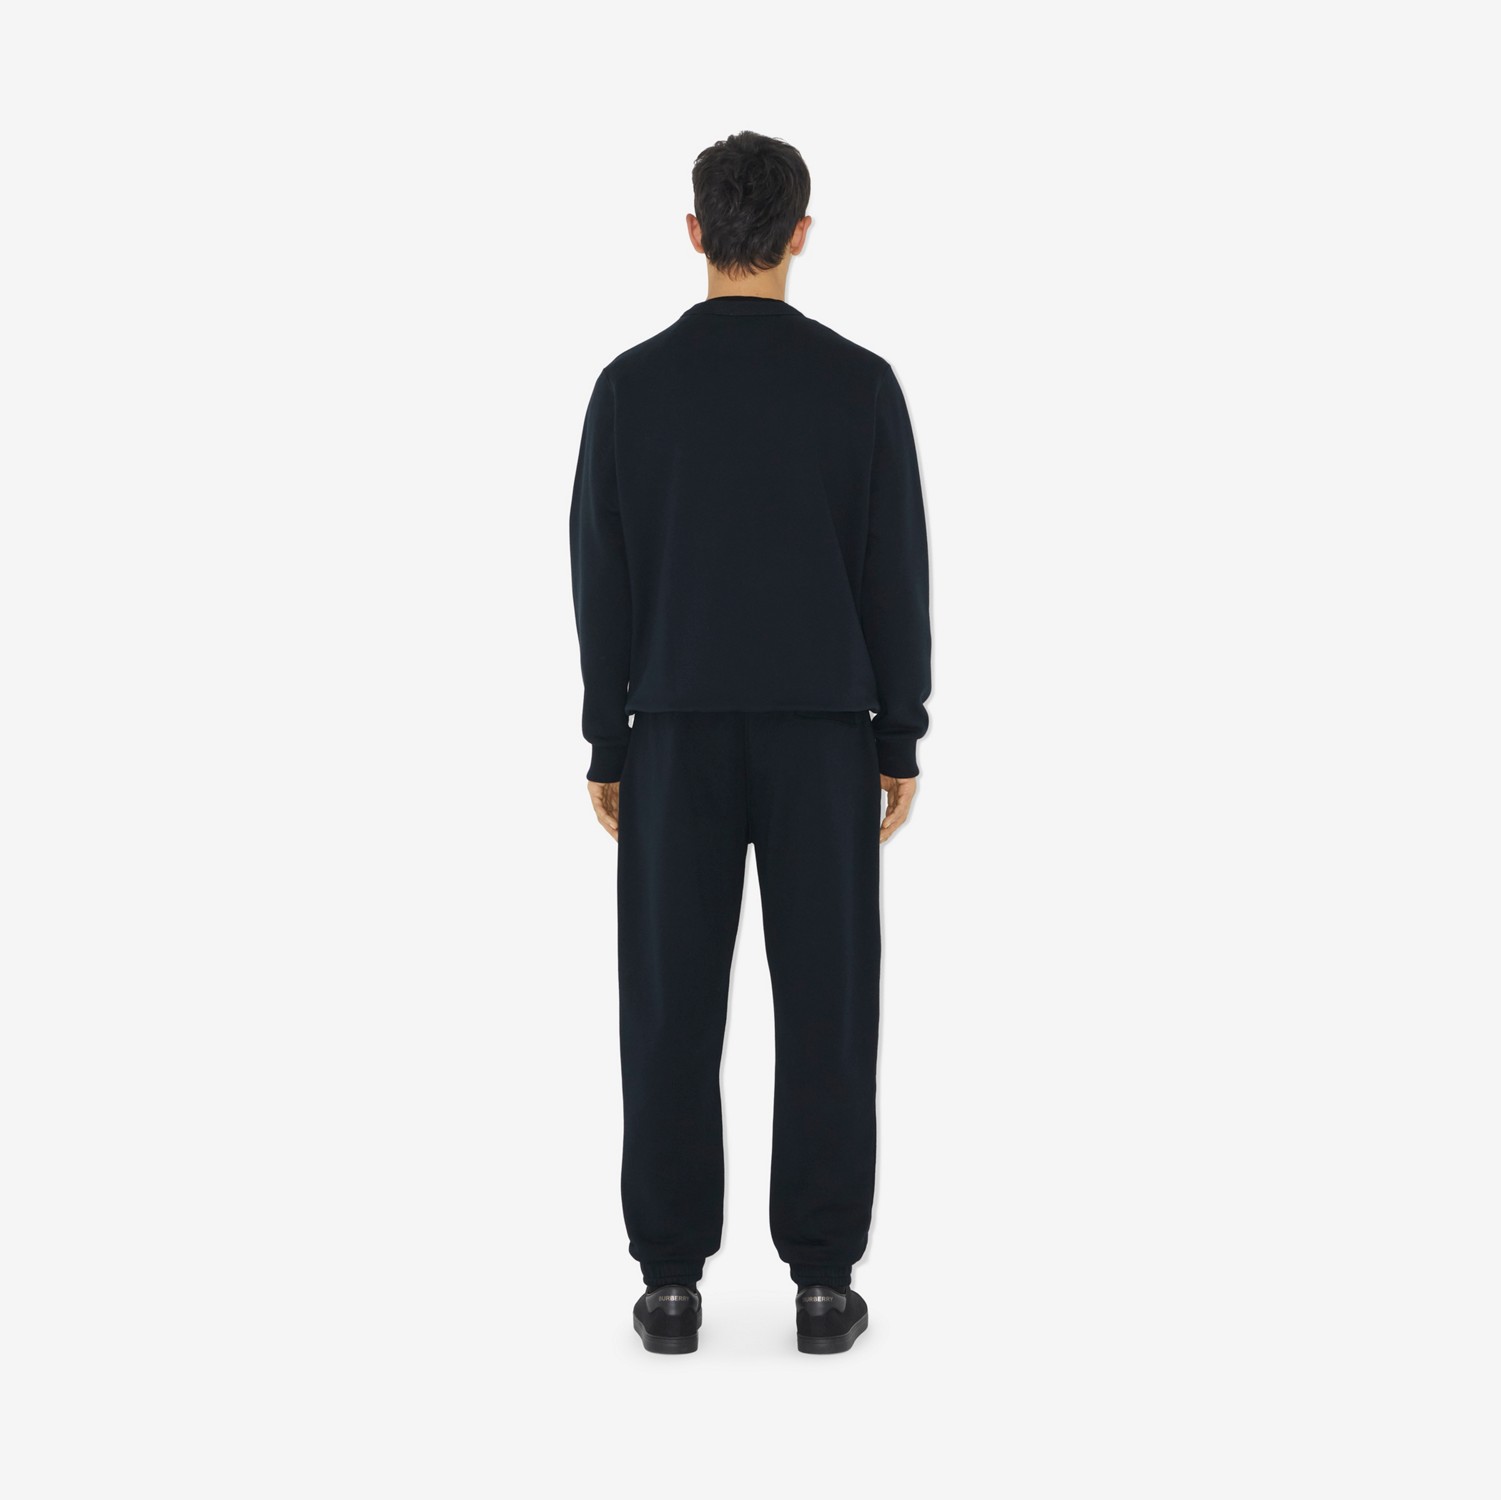 Baumwoll-Sweatshirt mit EKD-Motiv (Rauchiges Marineblau) - Herren | Burberry®